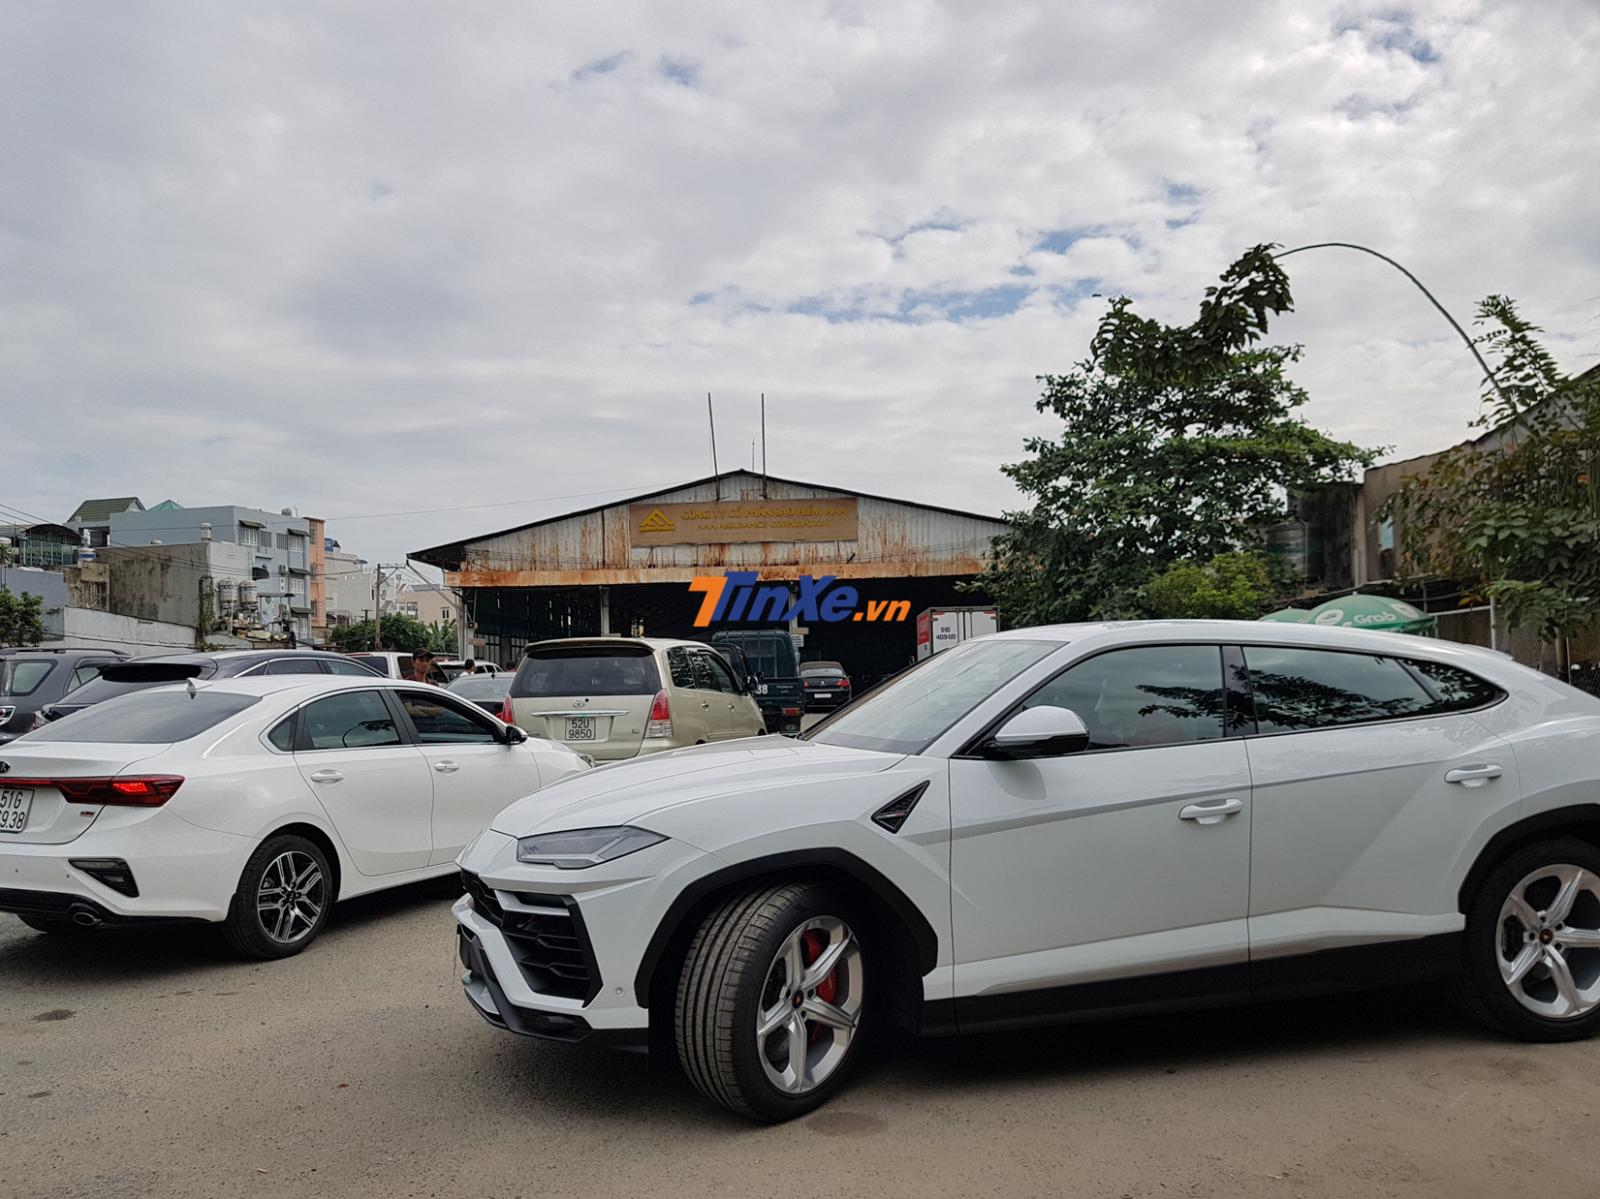 Trong đó siêu SUV của Minh Nhựa là chiếc Lamborghini Urus đầu tiên tại Việt Nam